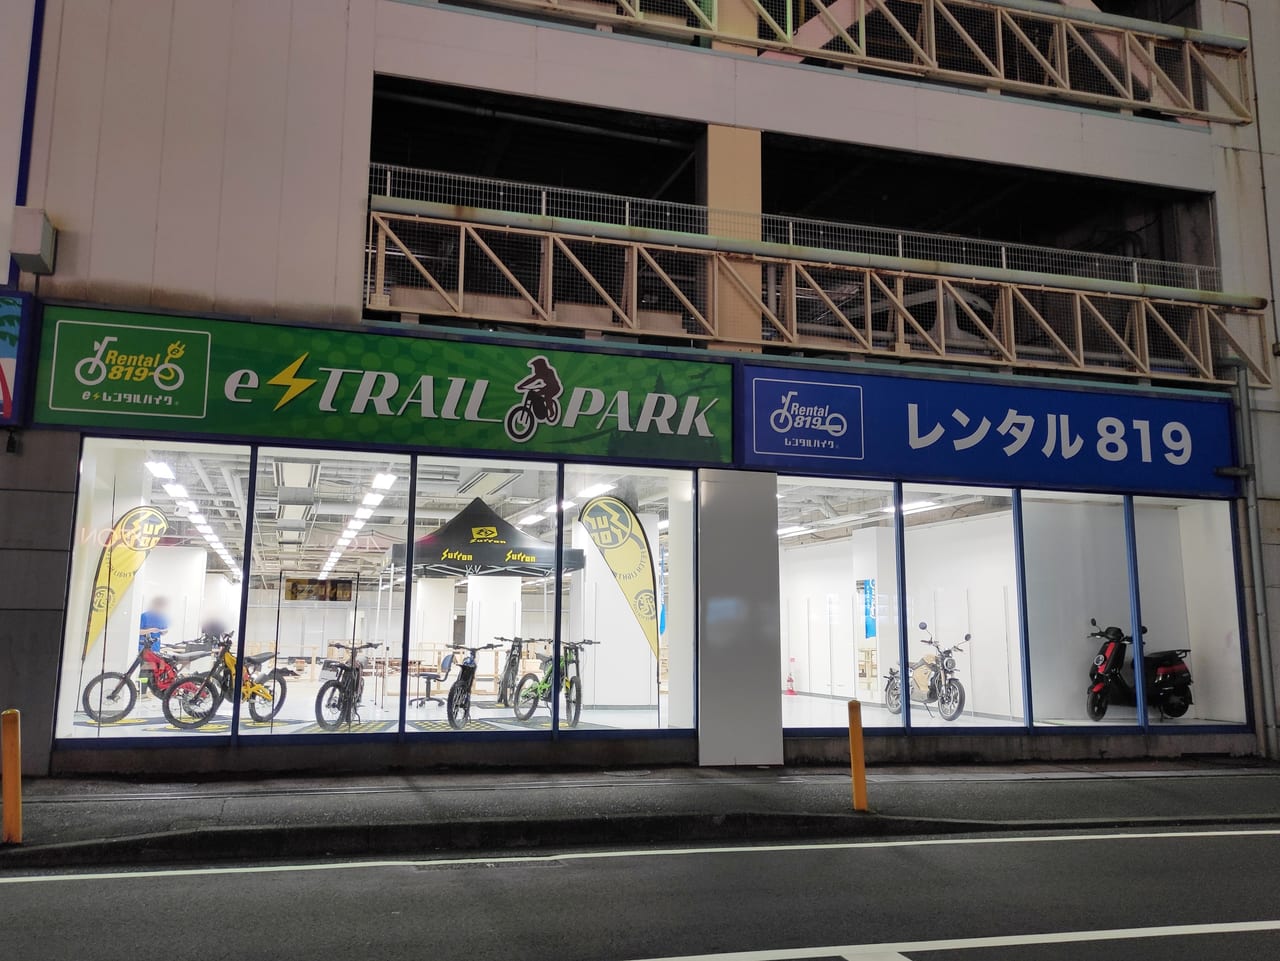 海老名市 7月30日 イオン海老名にレンタルバイクの専門店 レンタル819 がオープンします 号外net 海老名市 座間市 綾瀬市